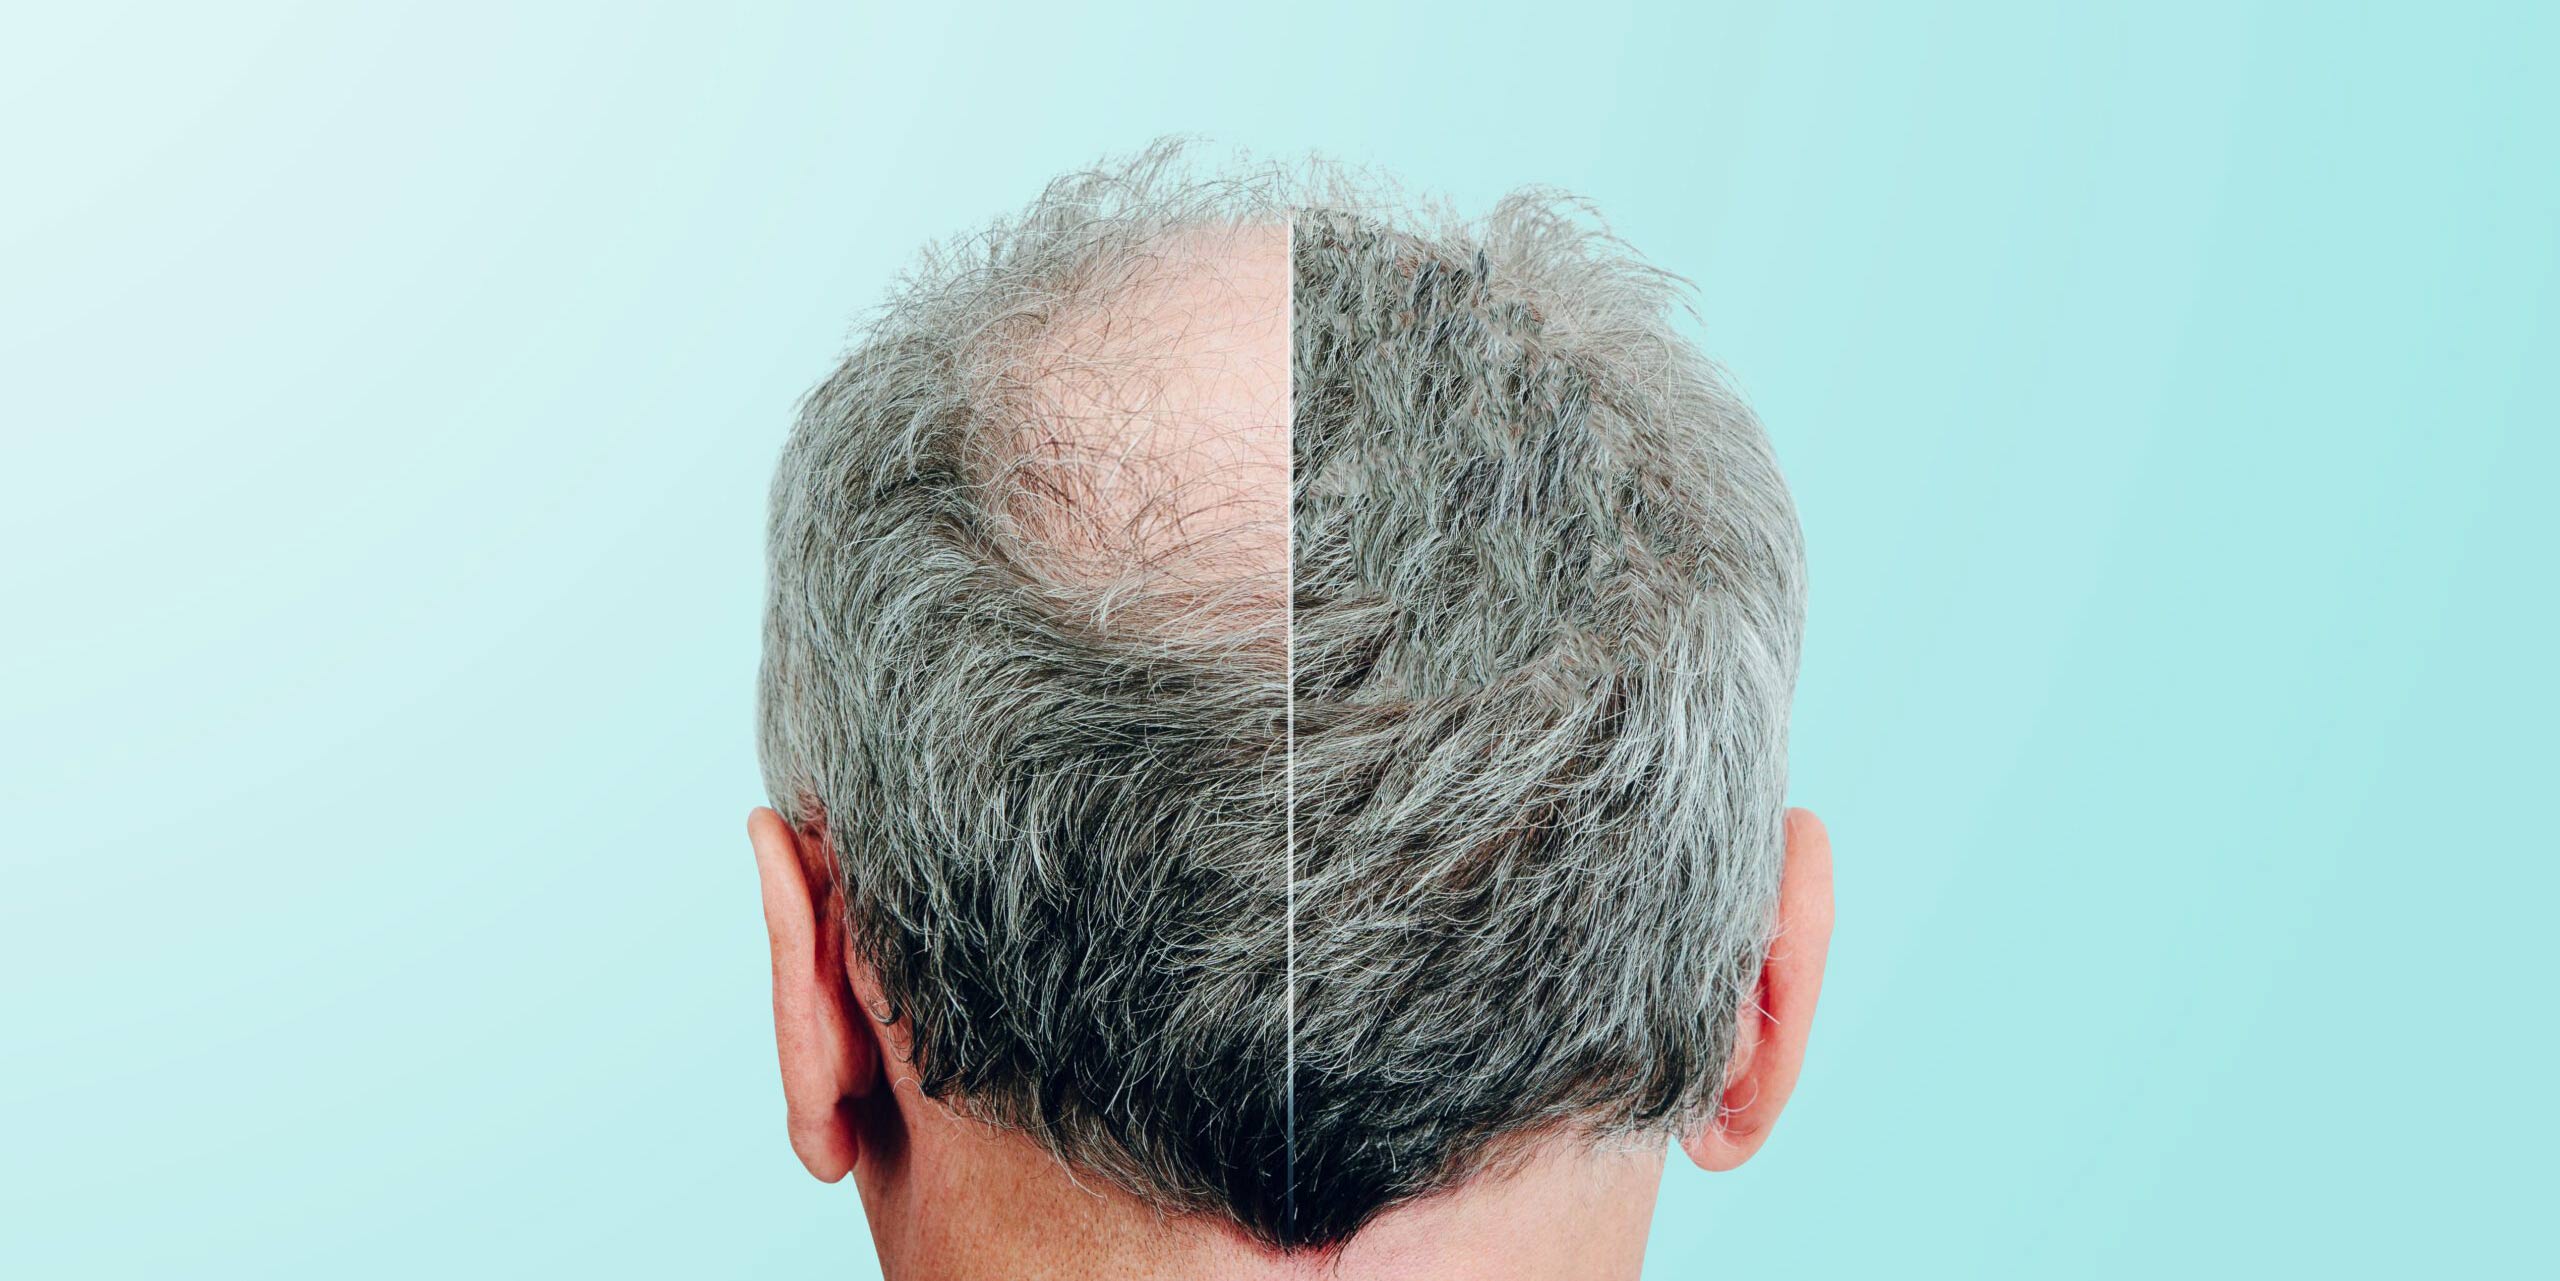 PRP Treatment for hair loss - La Maison Medicale - Kensington International  Clinic